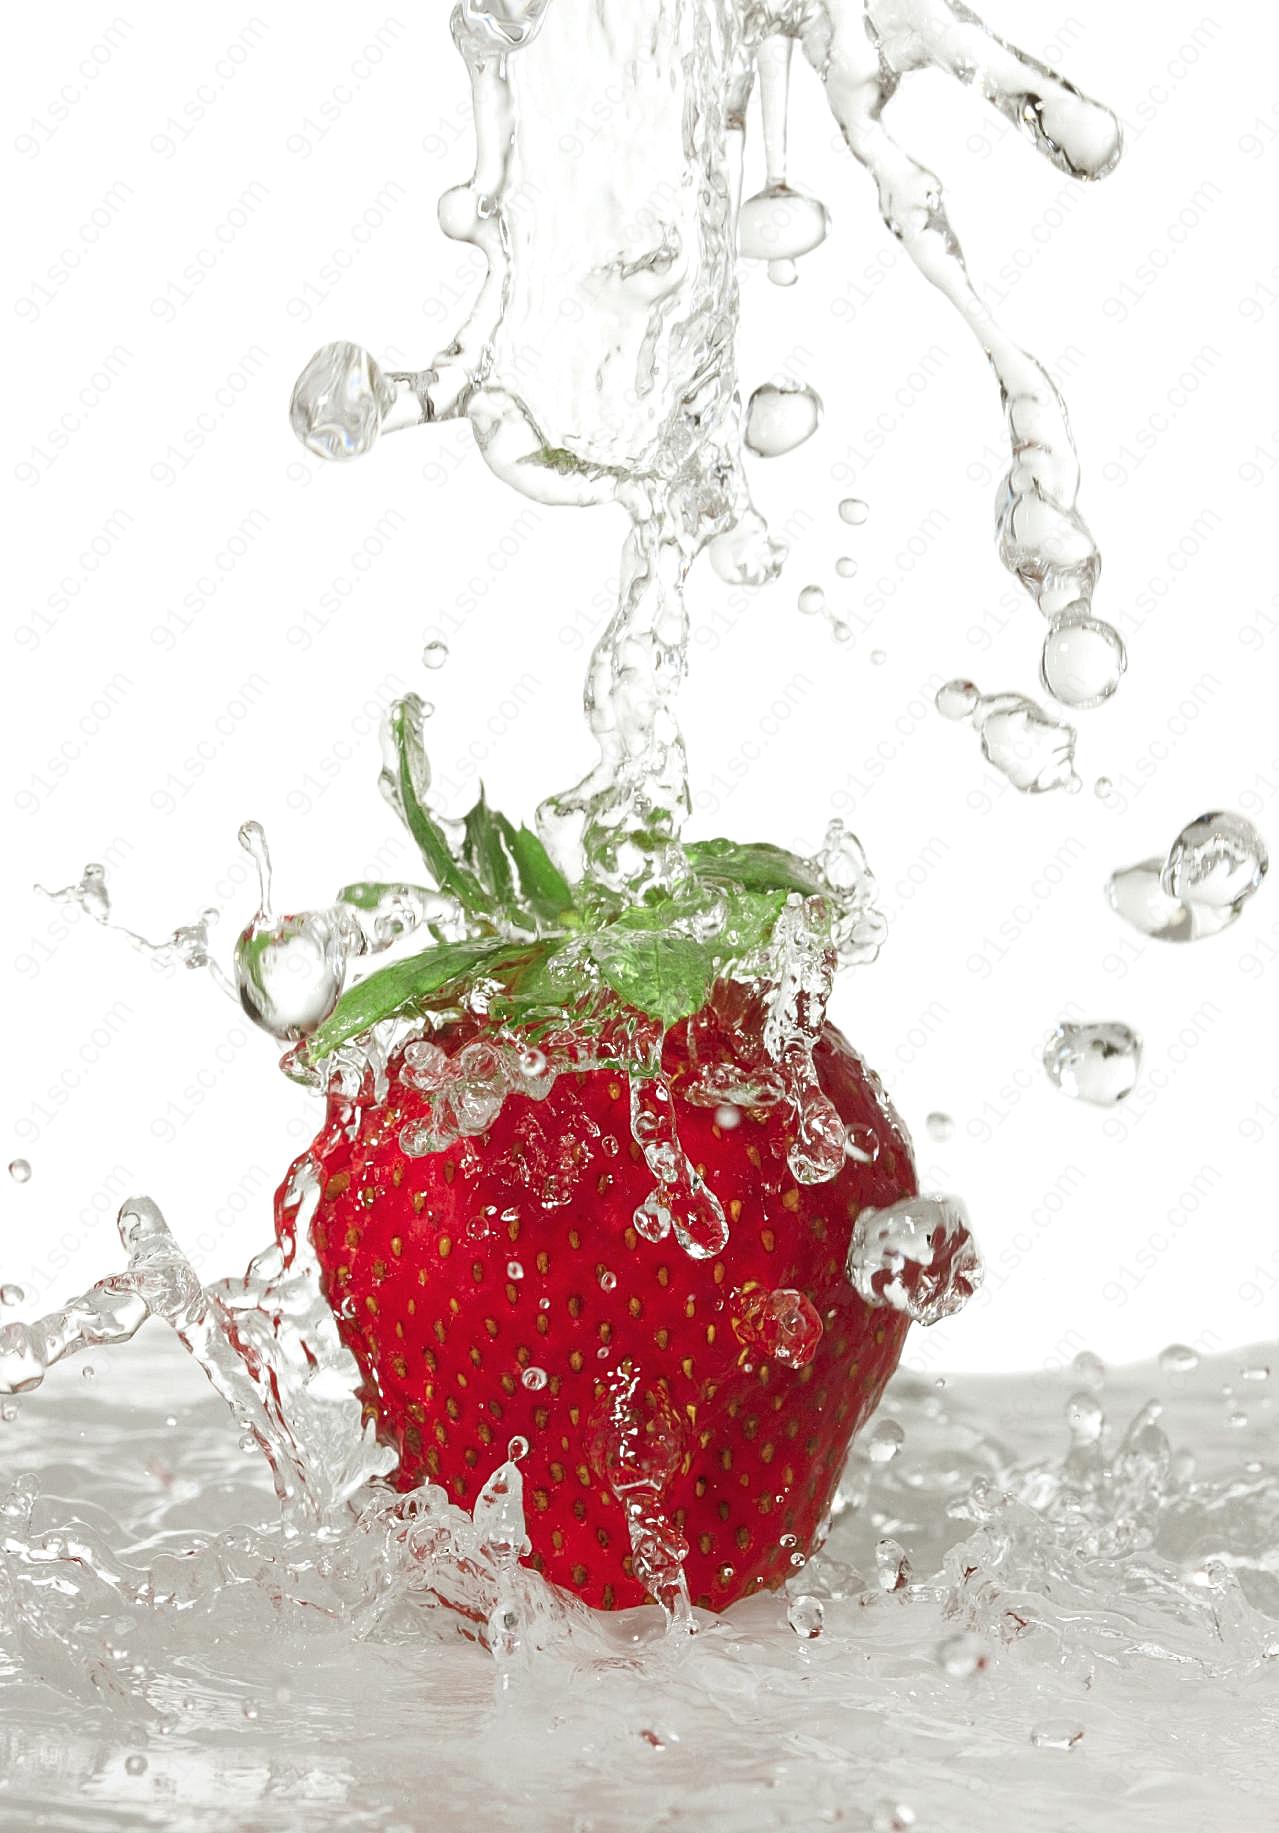 高清新鲜草莓图片下载水果